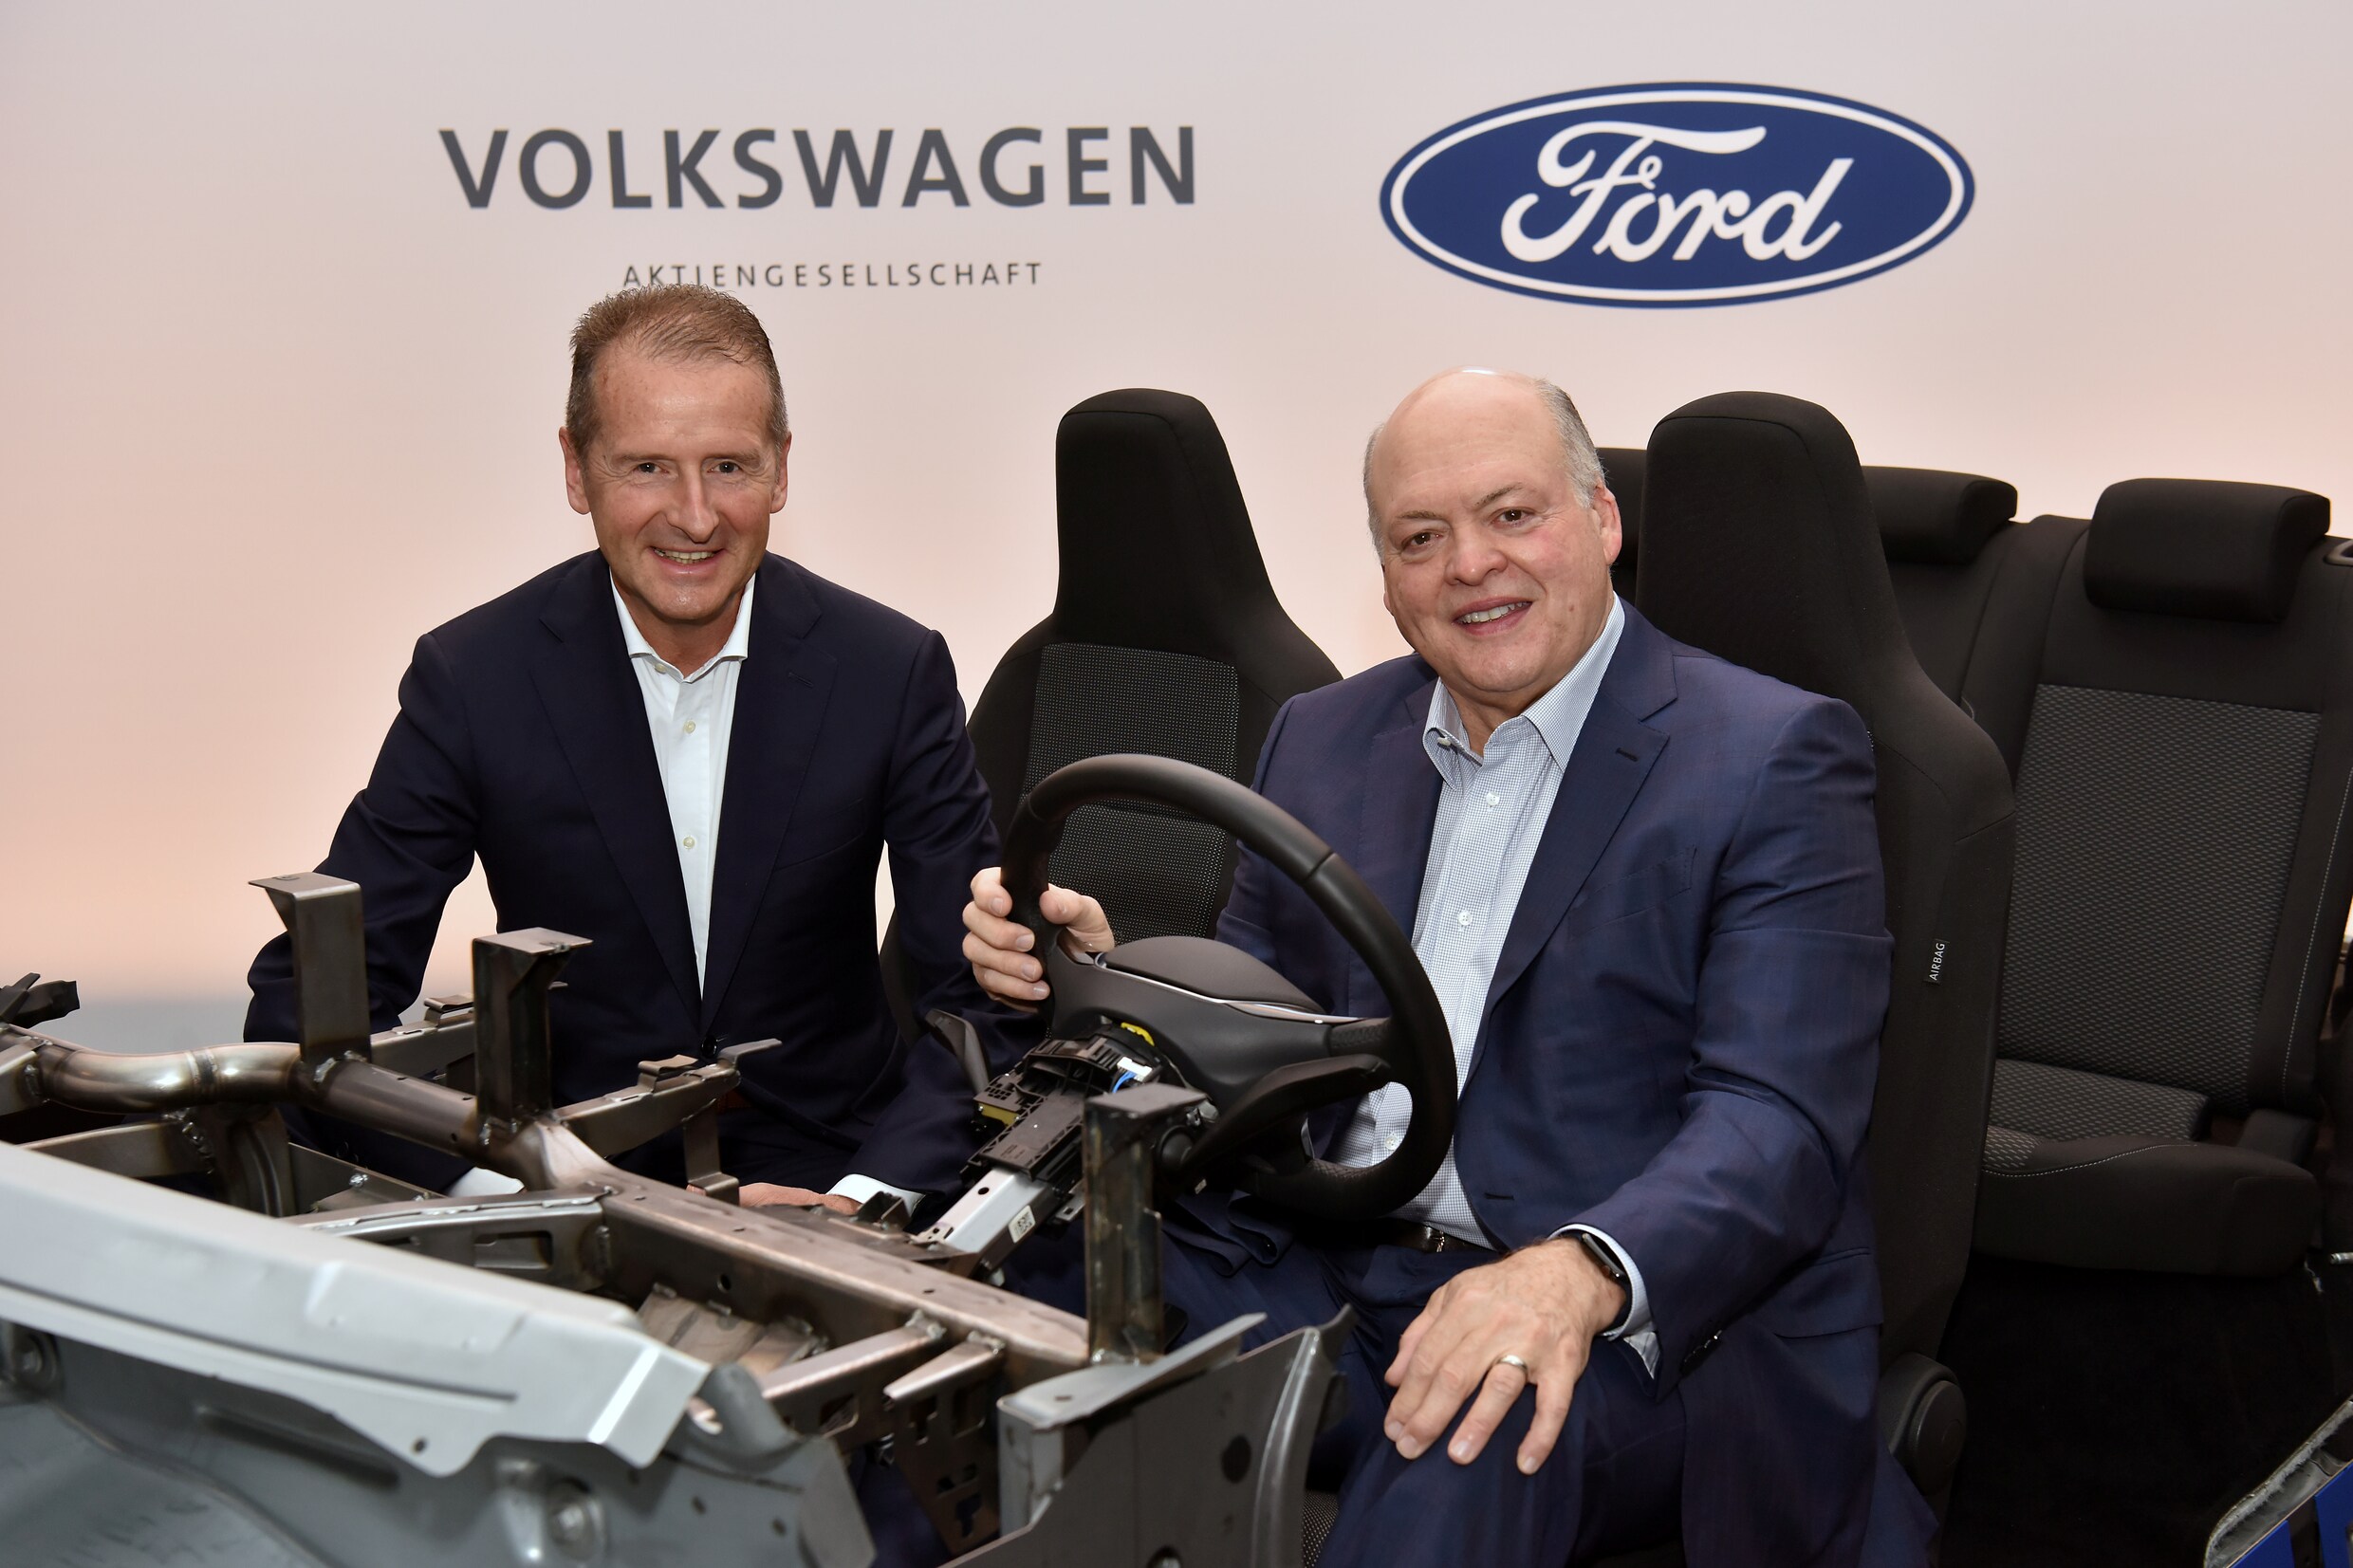 Berkat kerja sama antara VW dan Ford, ‘VolksFords’ listrik pertama akan melaju di Eropa dalam beberapa tahun.